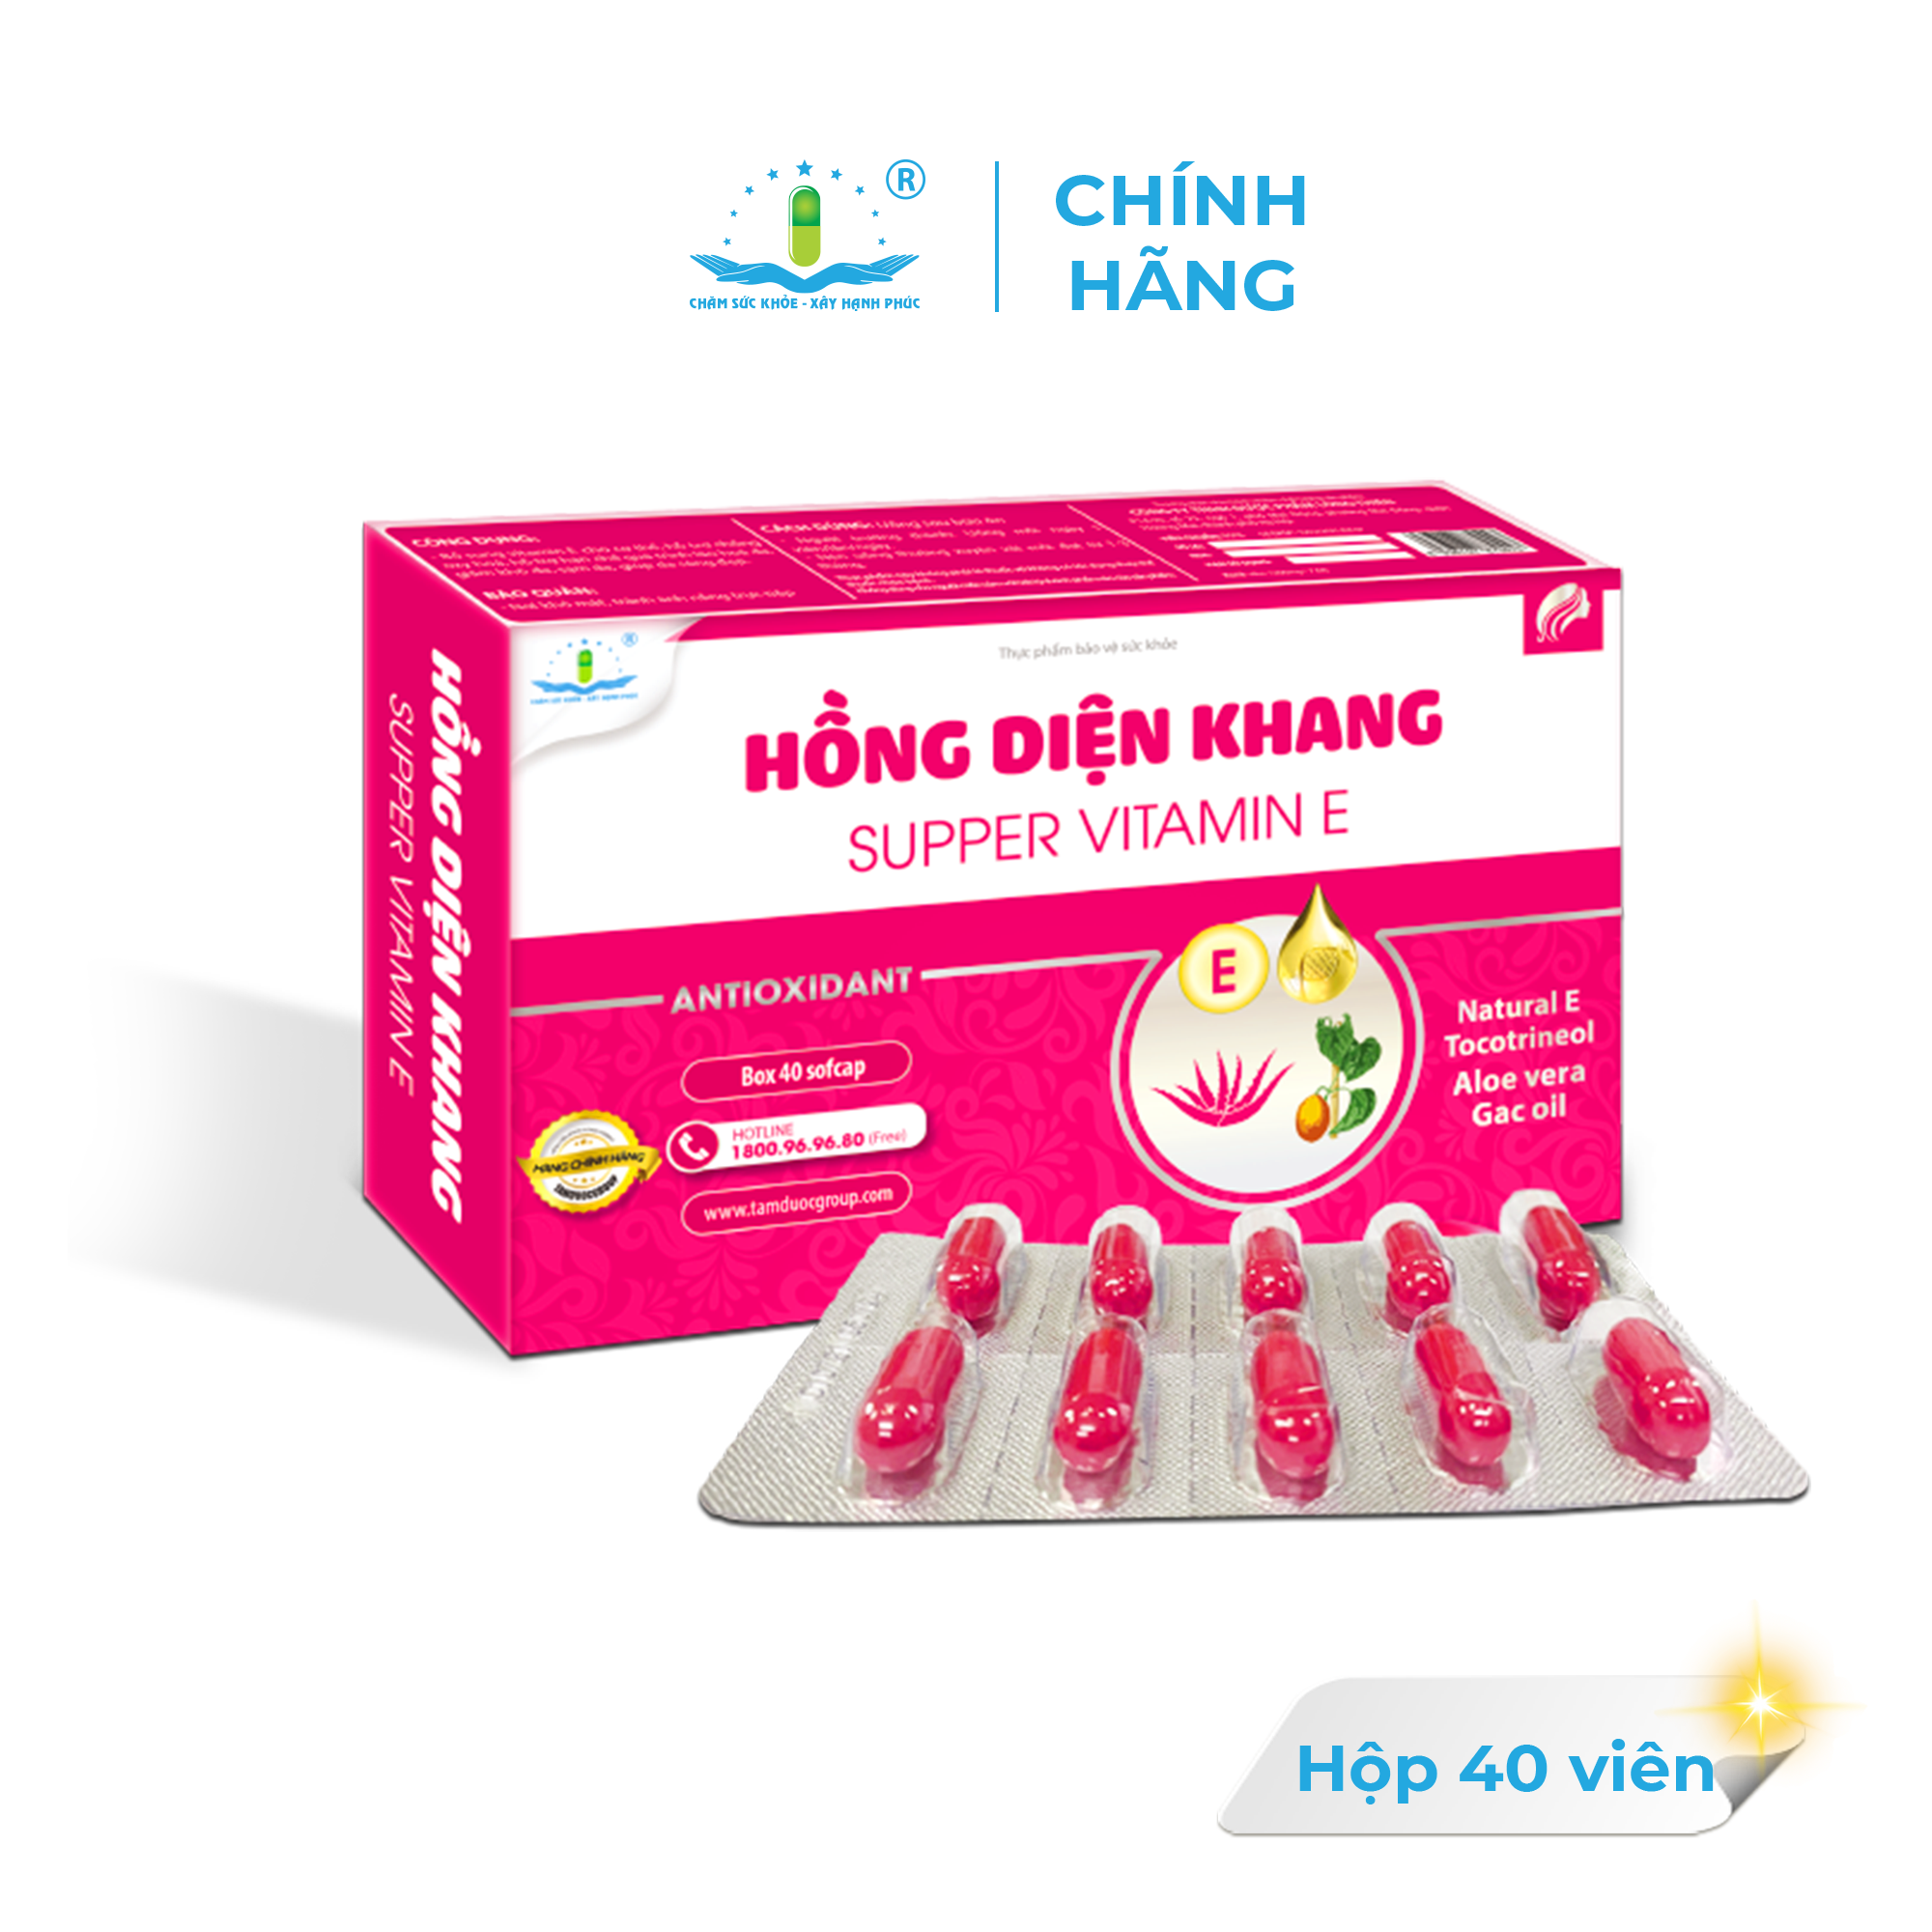 HỒNG DIỆN KHANG SUPPER VITAMIN EBổ Sung Vitamin E, Ngăn Ngừa Lão Hoá